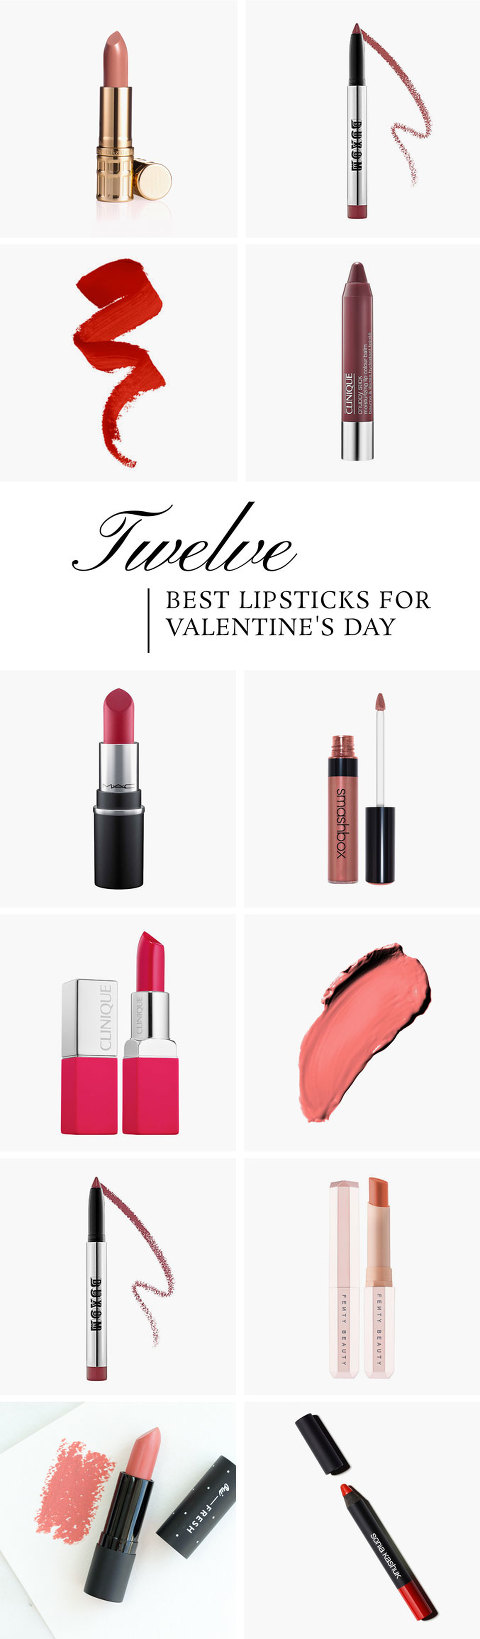 12 Best Lipsticks For Valentine's Day